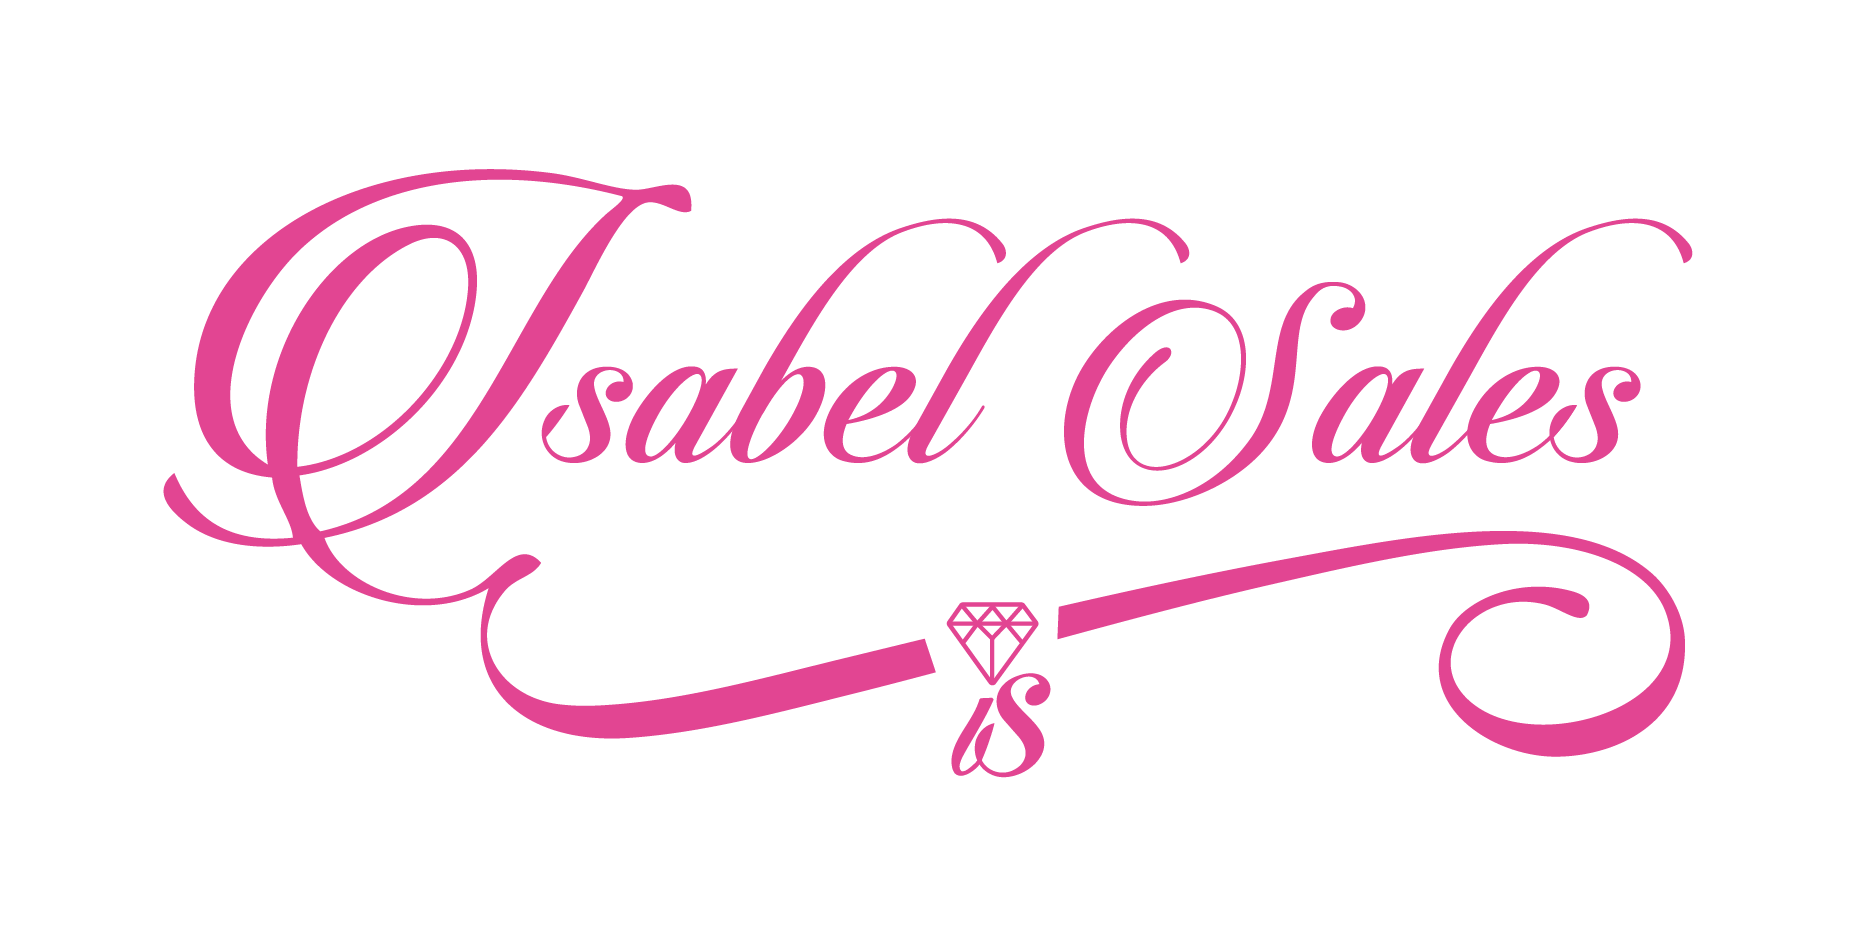 IsabelSales_logo-01